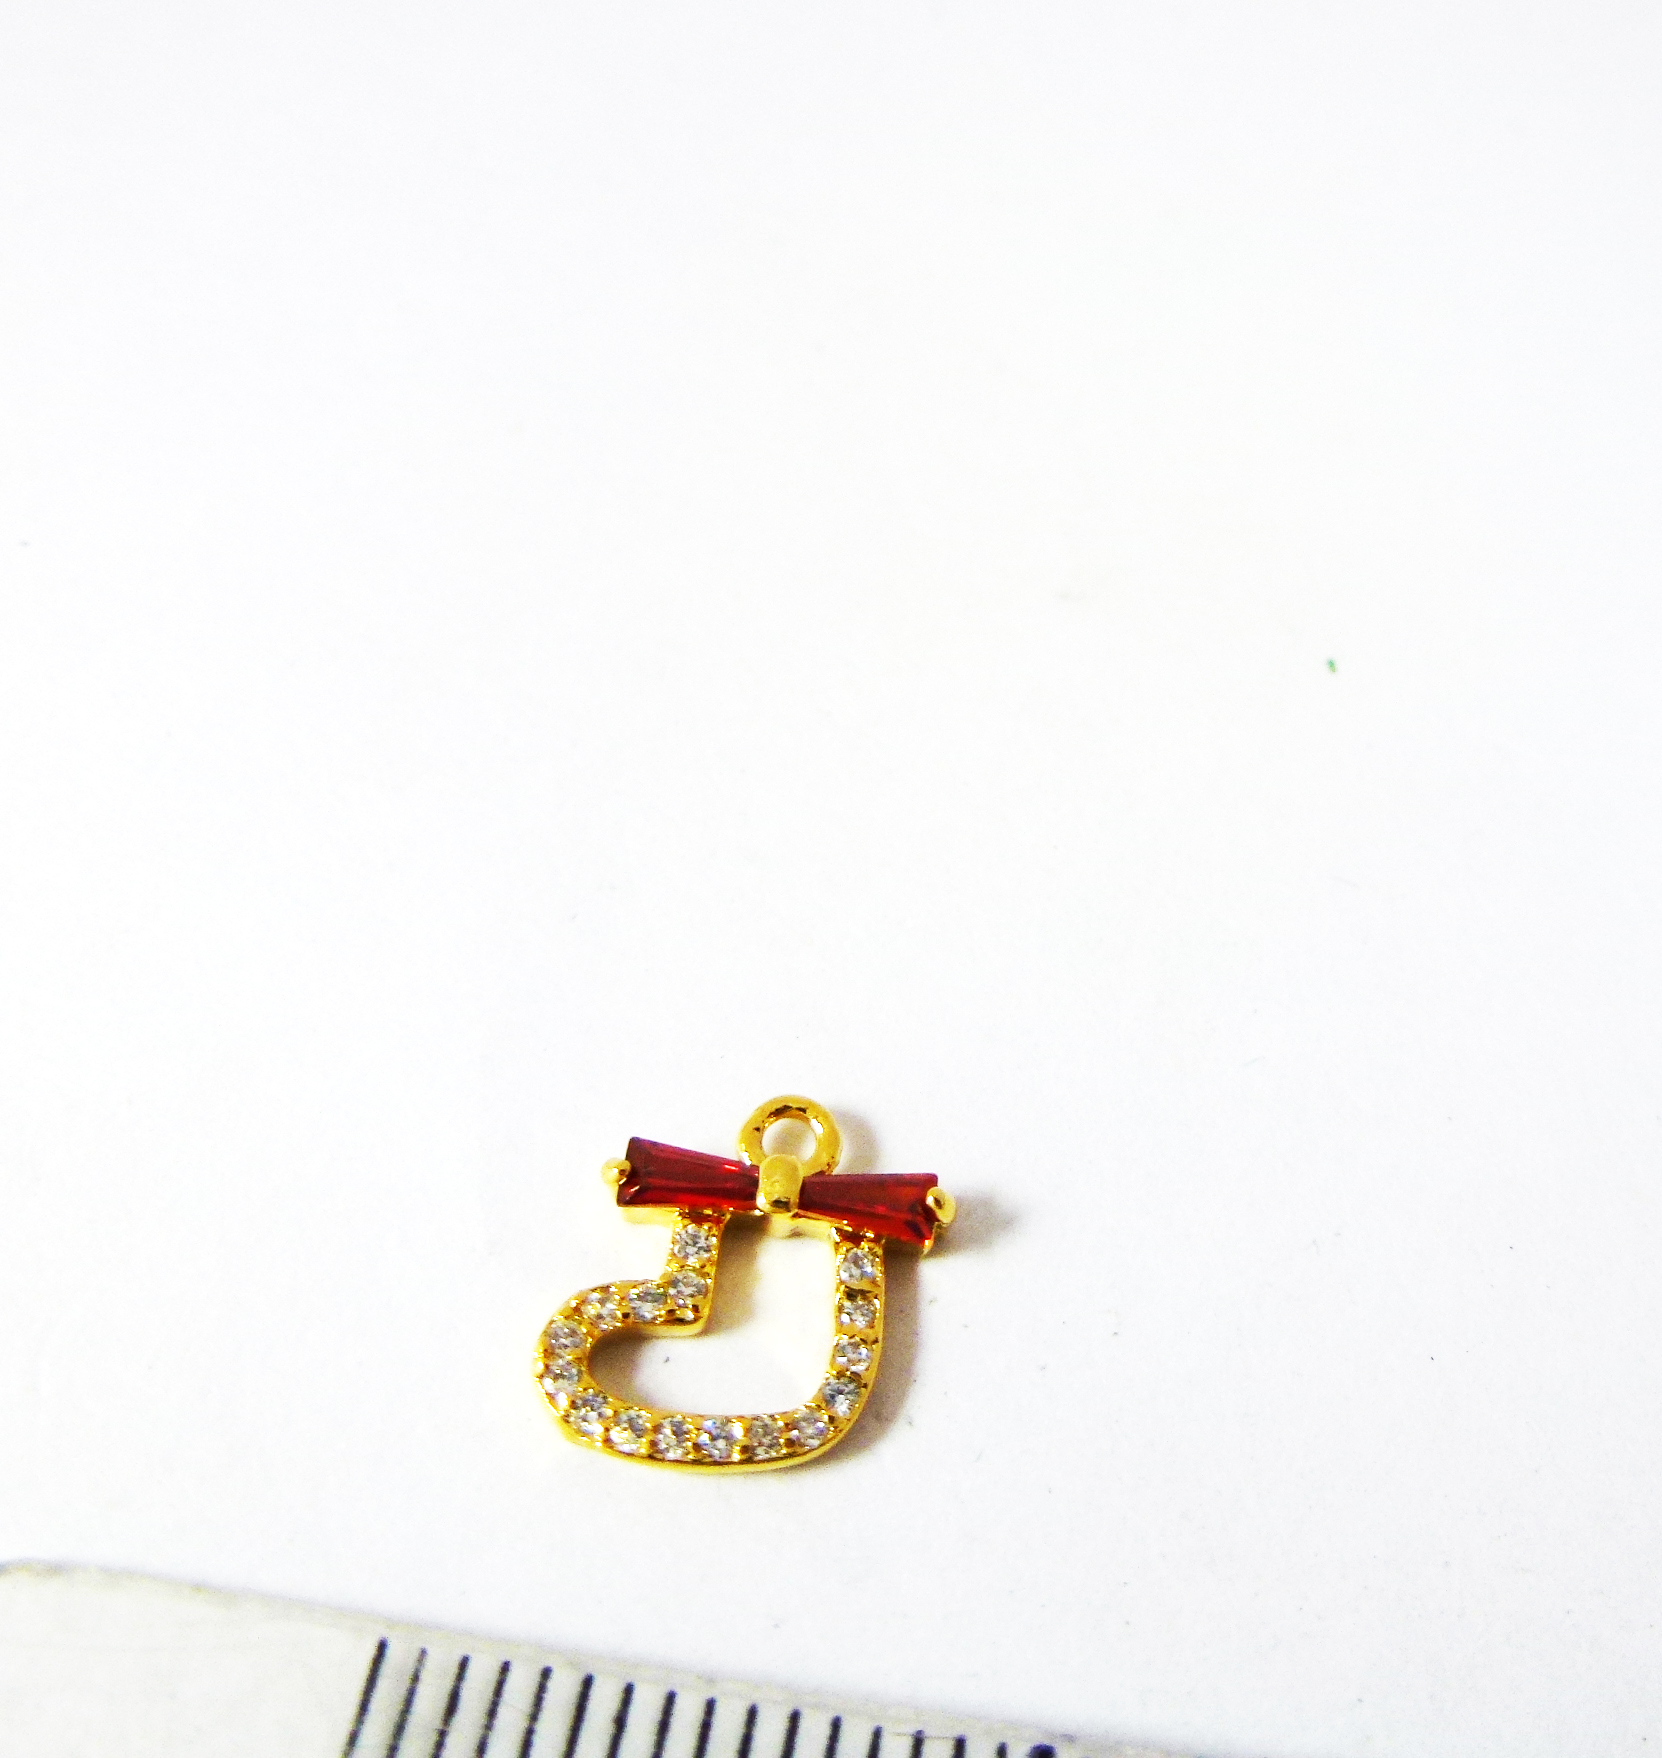 銅鍍金色單孔T形鋯石鑲鑽聖誕襪